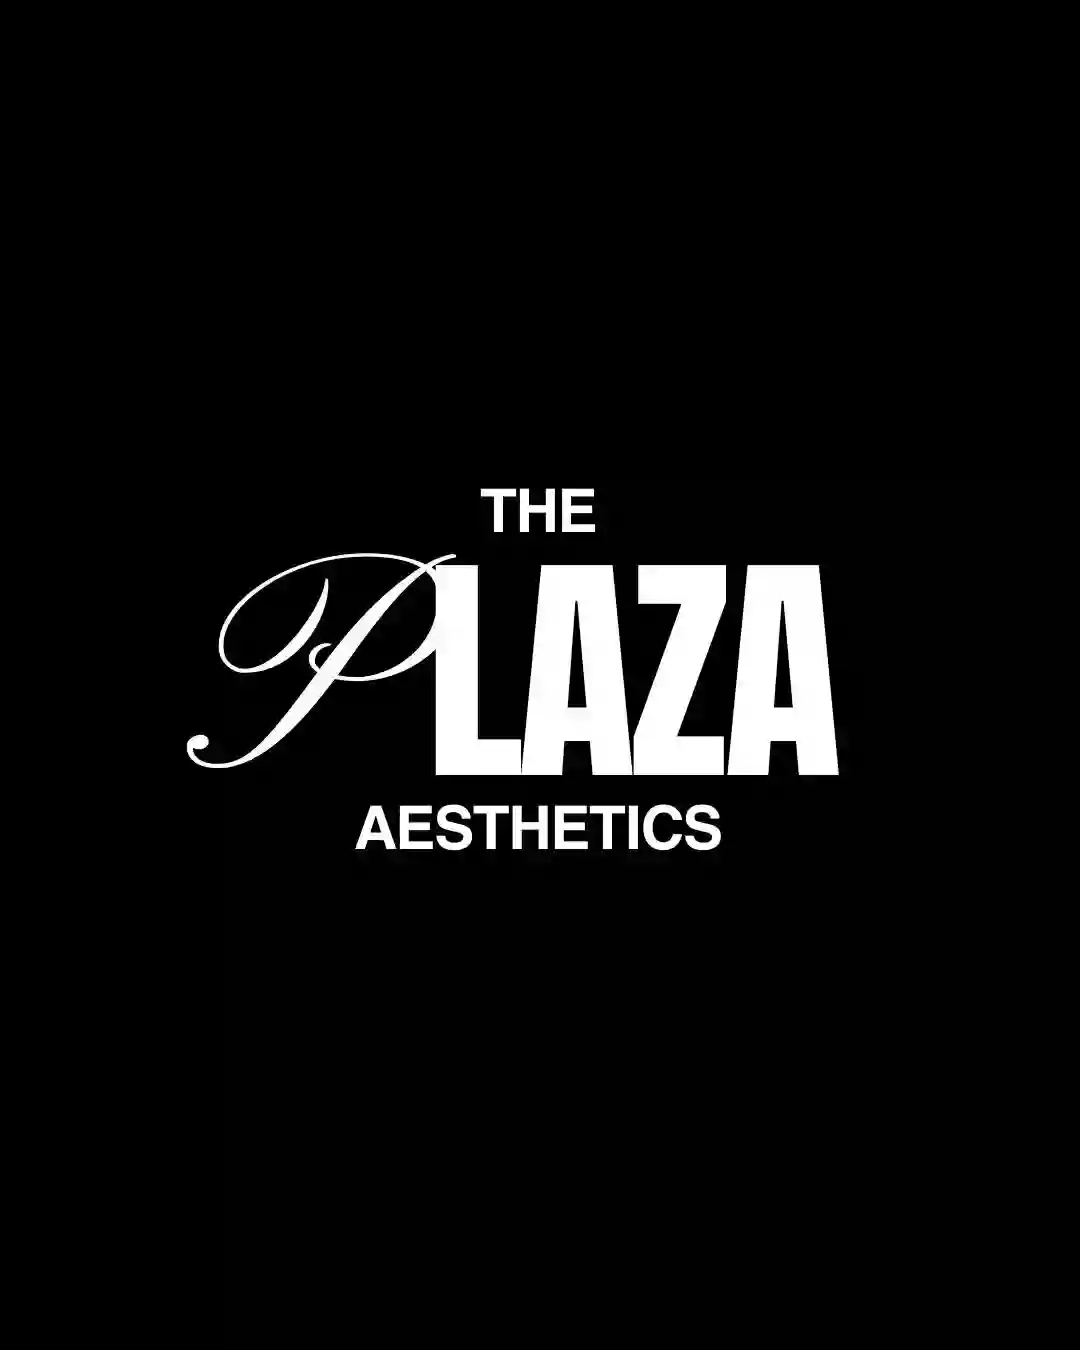 The Plaza Aesthetics